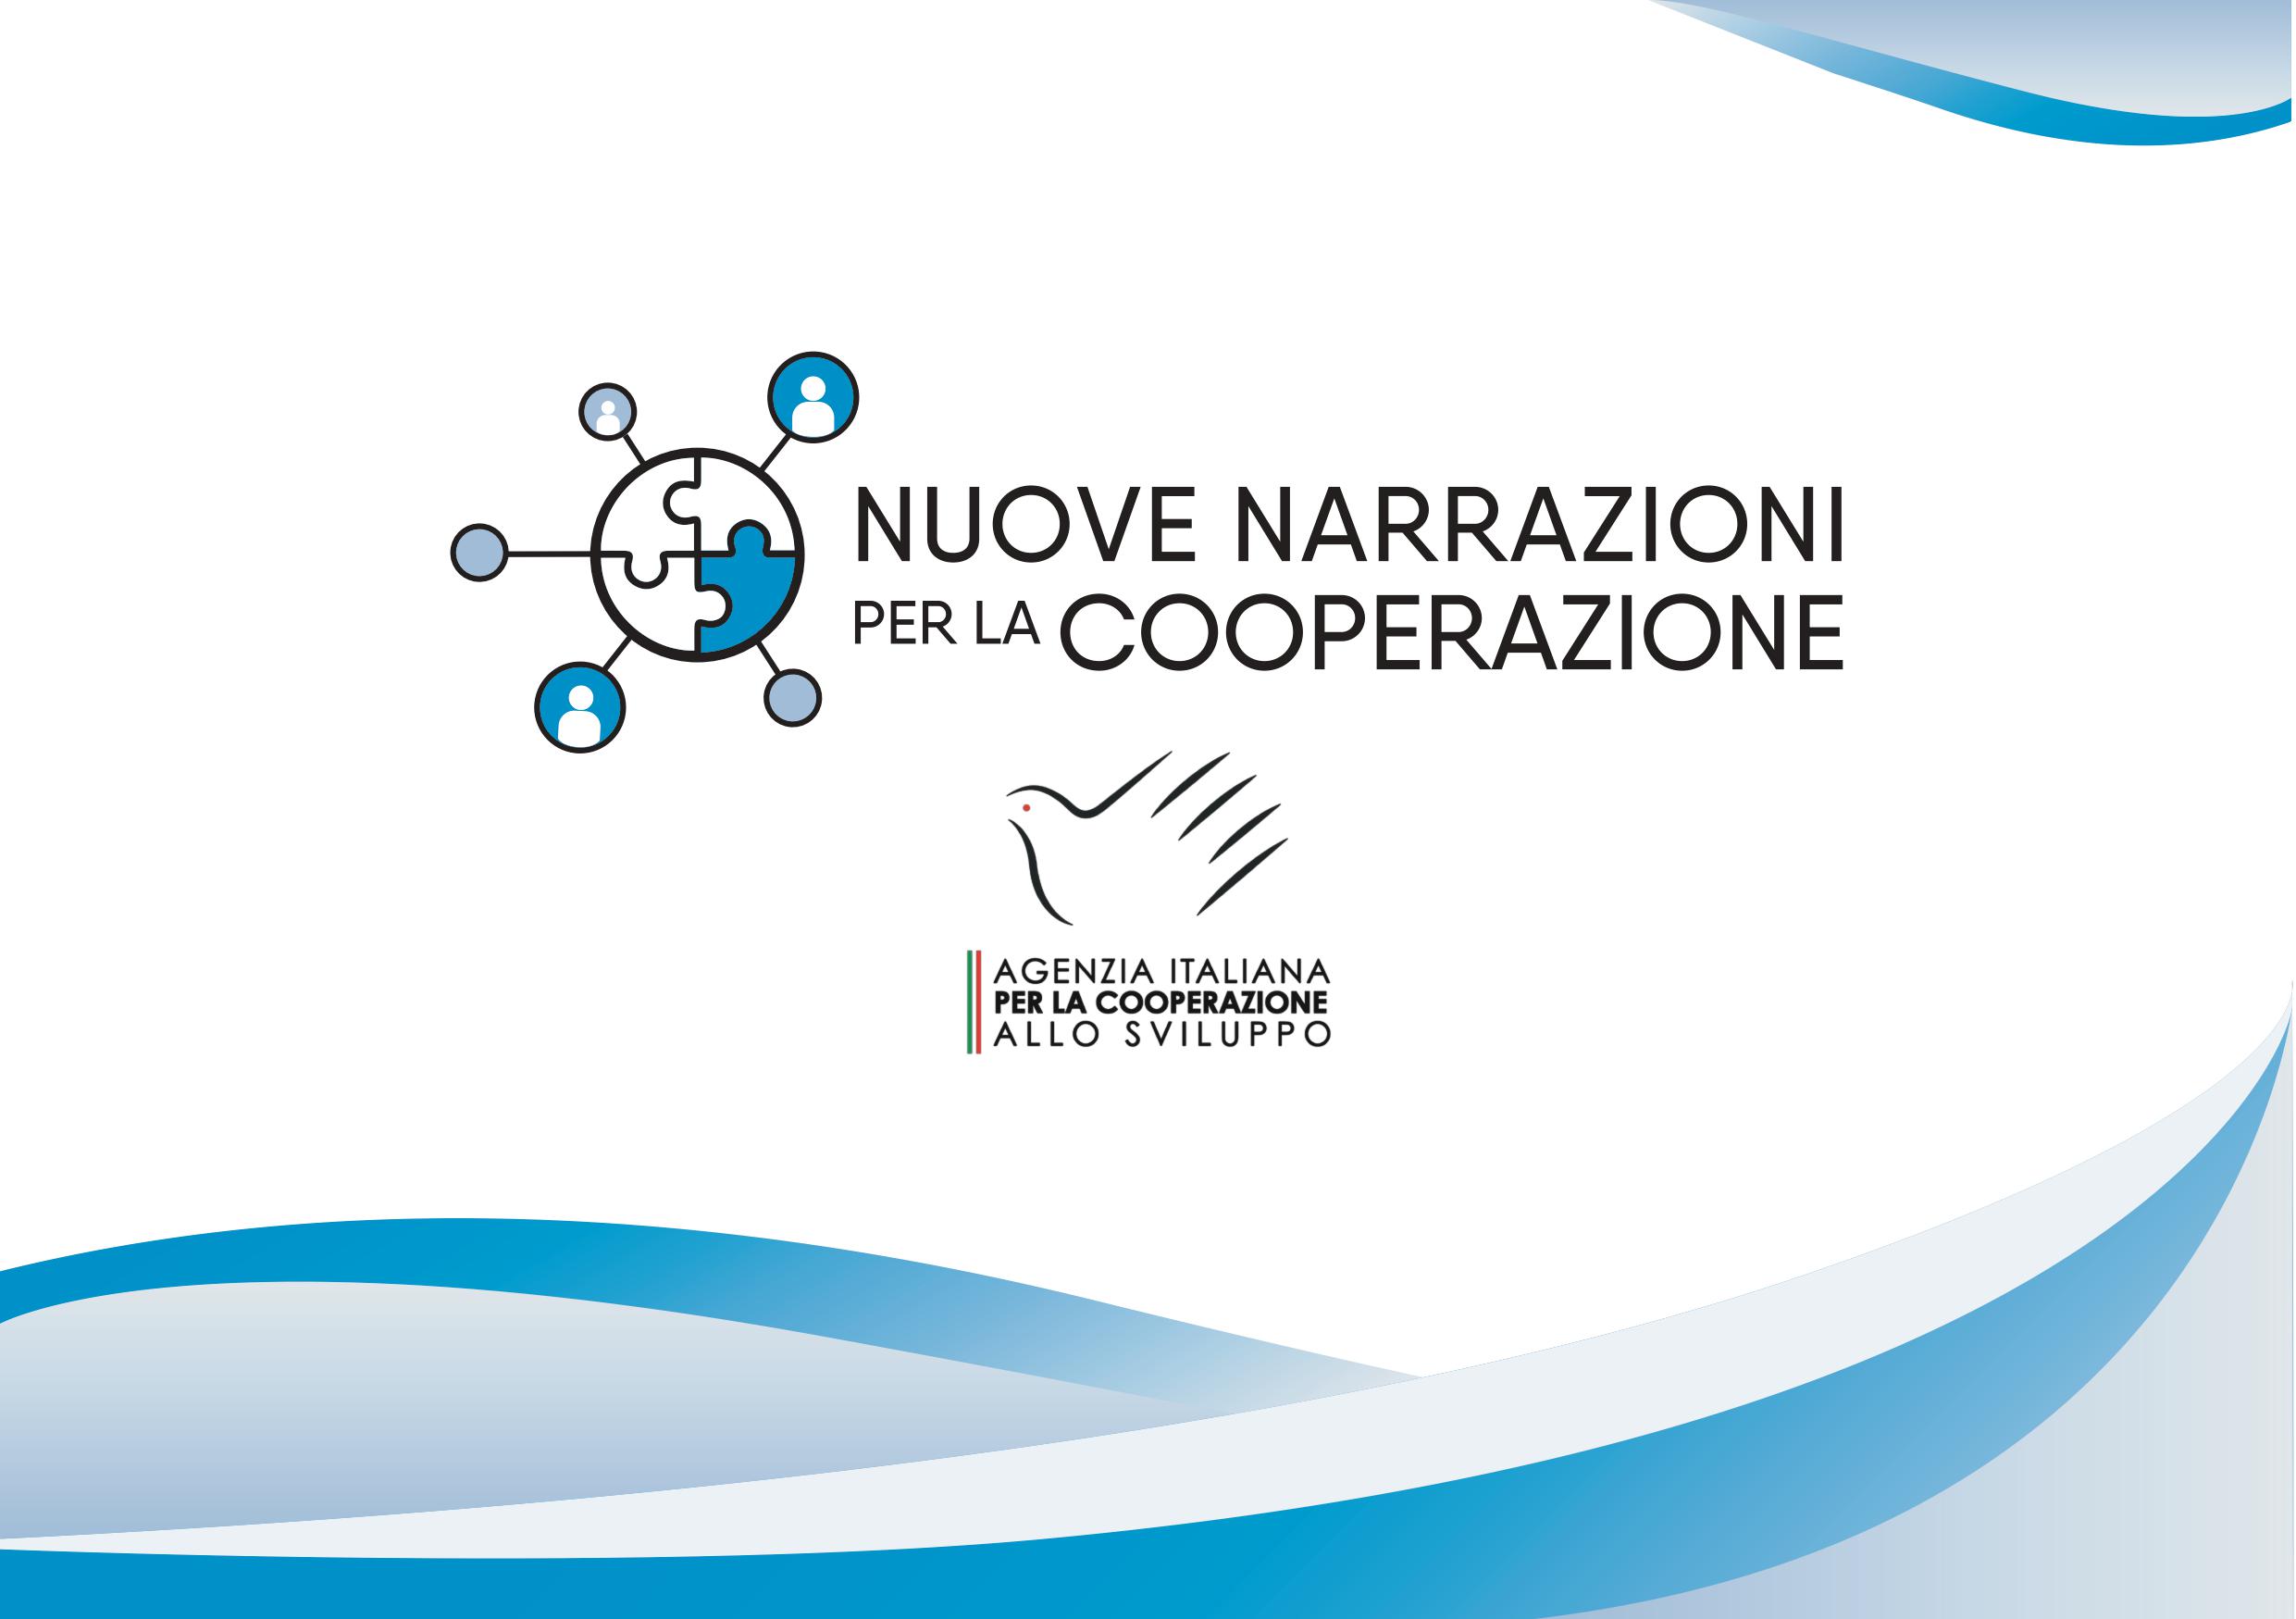 Nuove narrazioni per la cooperazione. I percorsi in ER, 13 novembre 2019 Centro Zonarelli Bologna